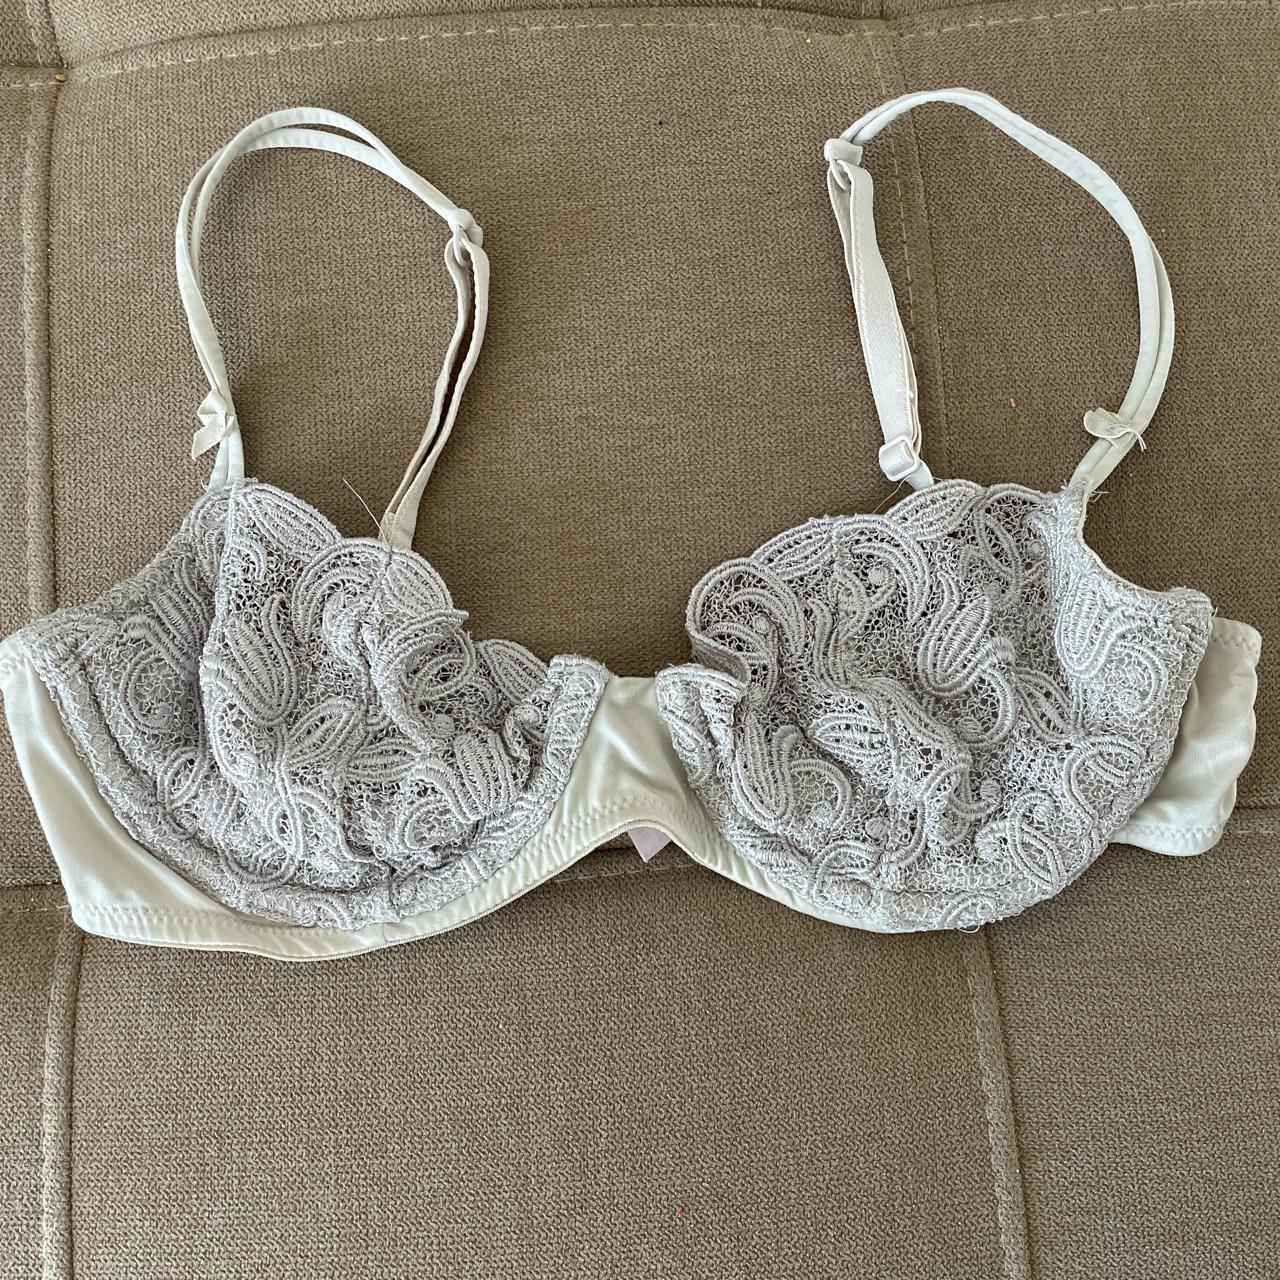 Victoria Secret grey lace bra 🤍 super cute and - Depop